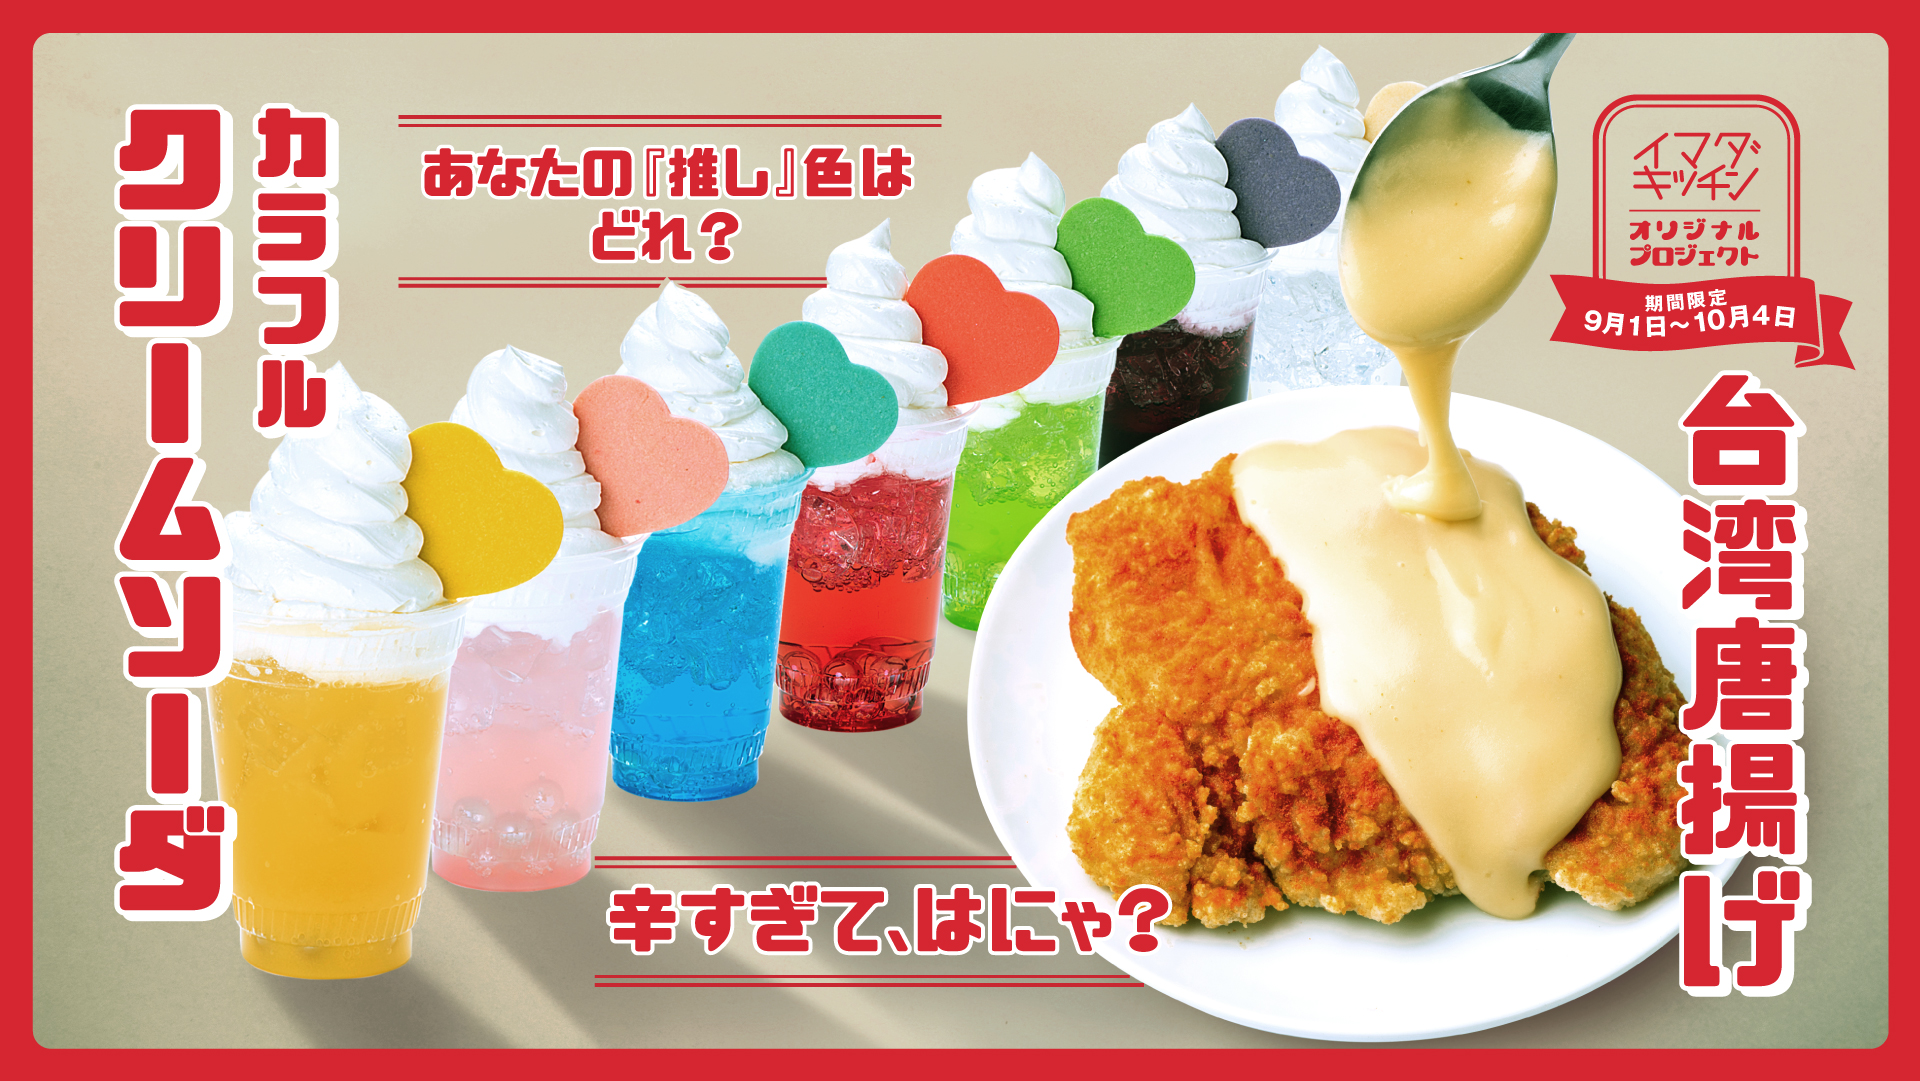 【推し活】推しメンカラーにカスタマイズできる「カラフルクリームソーダ」＆辛さ選べる「台湾唐揚げ」が登場🌈🥤🍗🔥